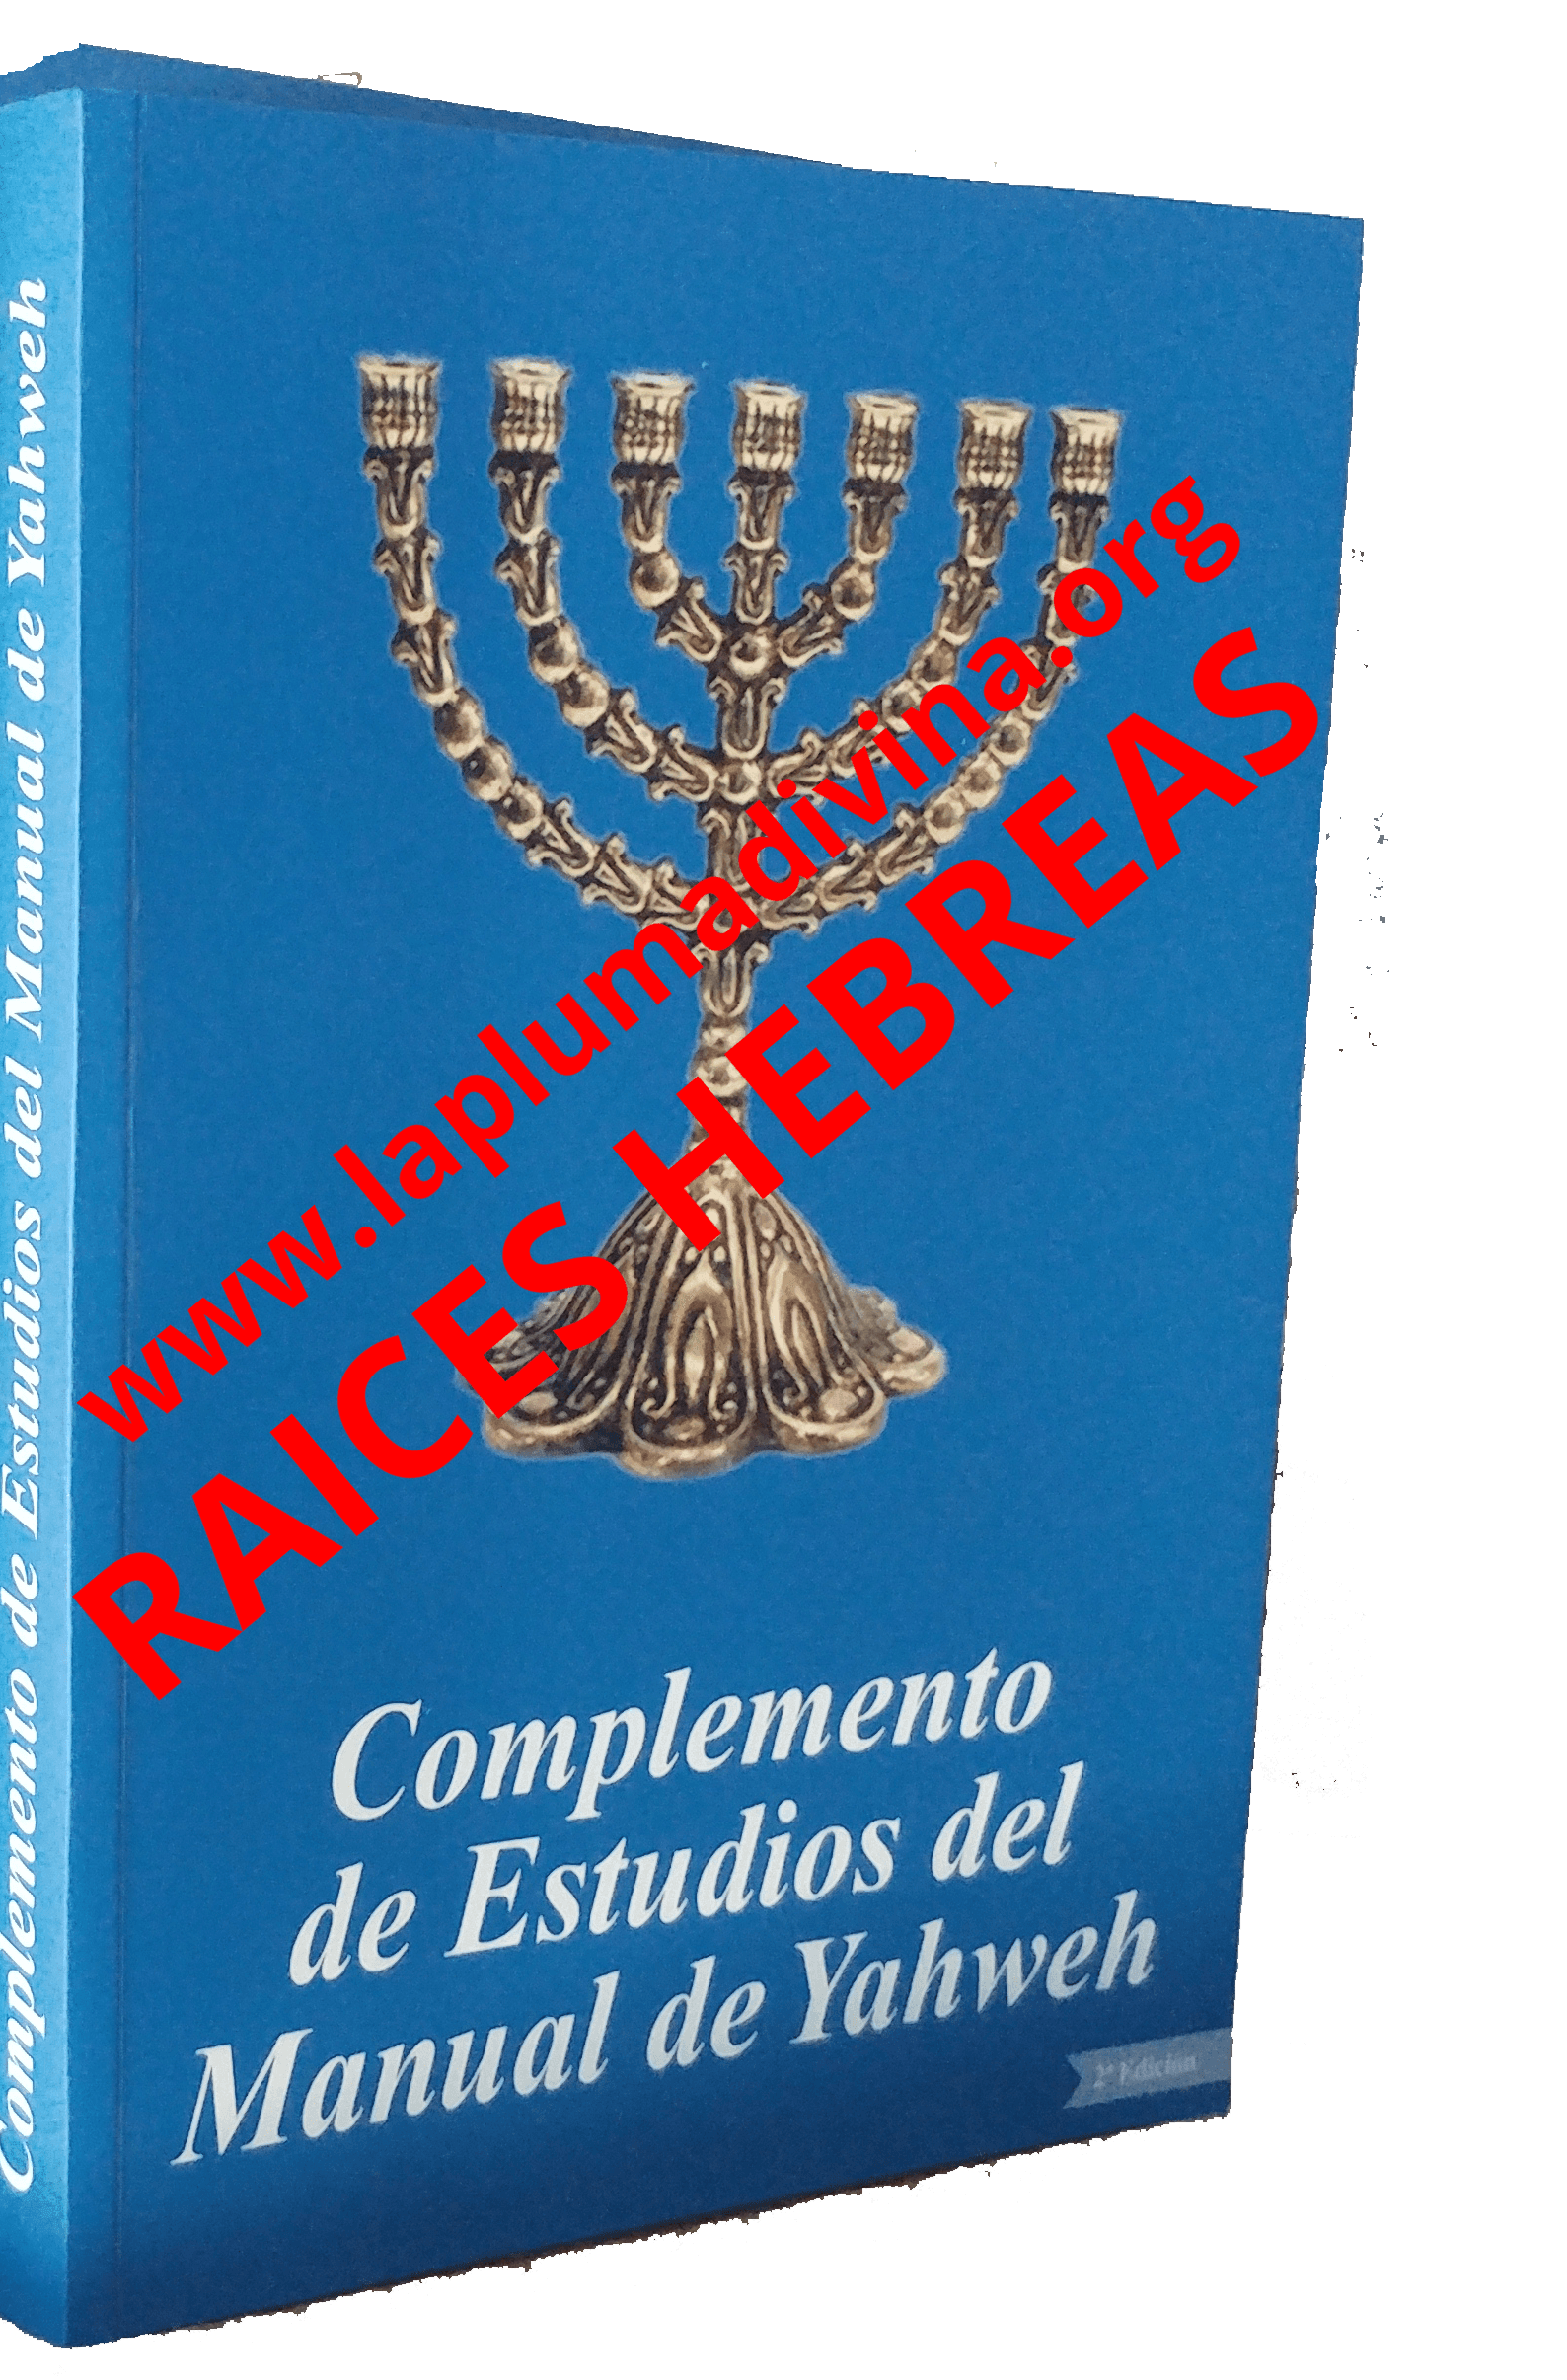 Complemento de Estudios del Manual de Yahweh Mayor Revelación Biblia Kadosh Raíces Hebreas